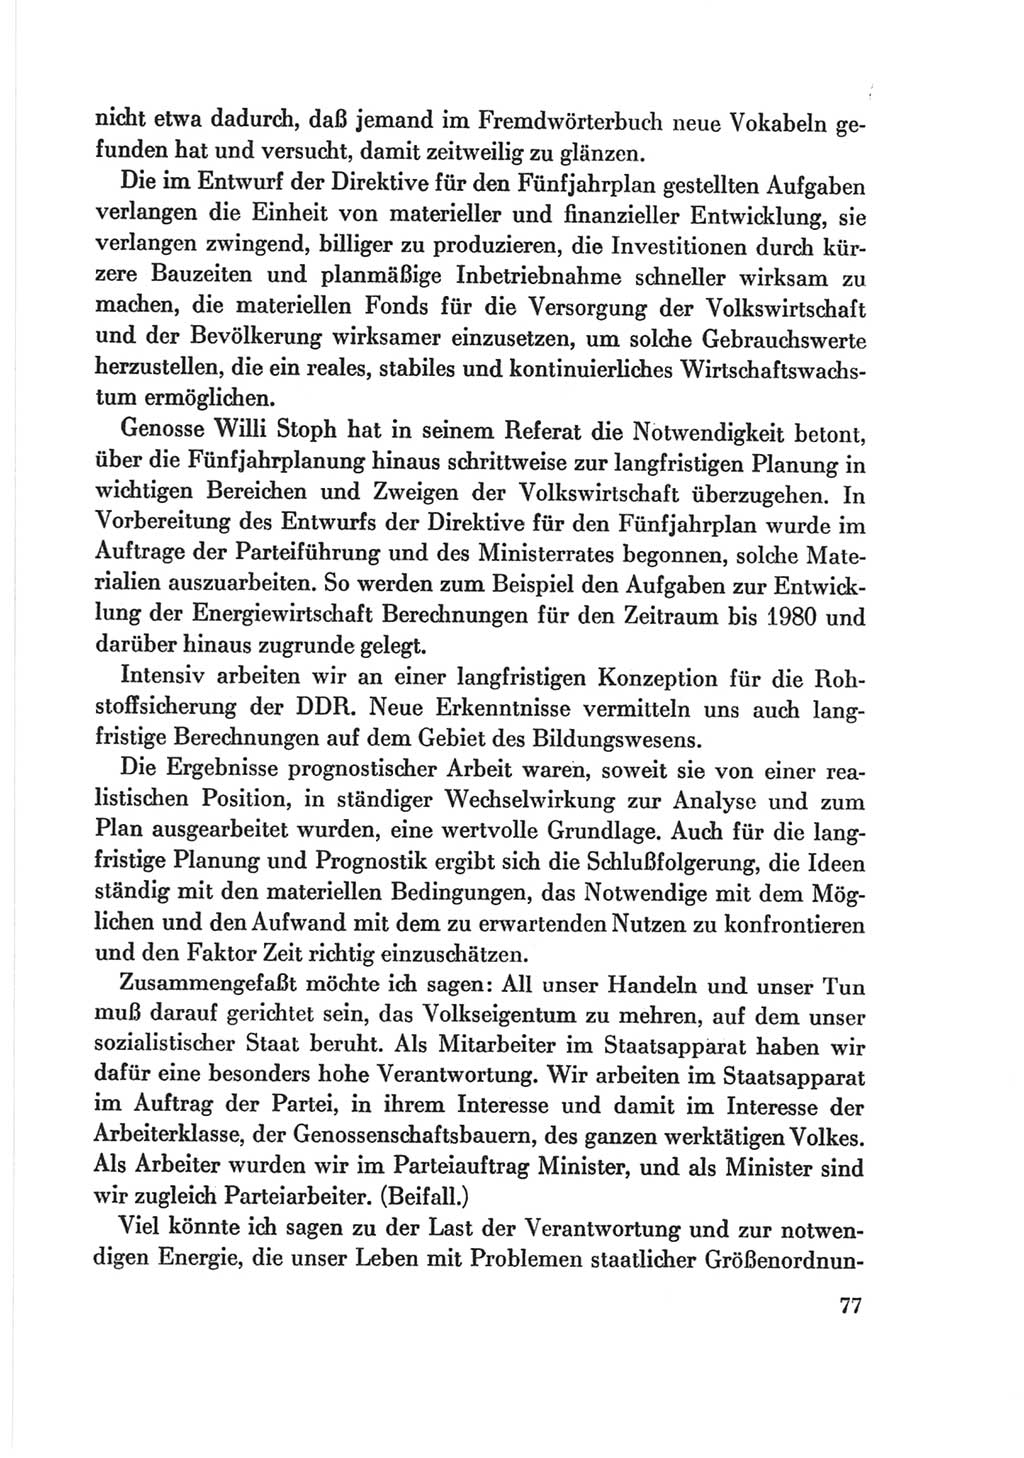 Protokoll der Verhandlungen des Ⅷ. Parteitages der Sozialistischen Einheitspartei Deutschlands (SED) [Deutsche Demokratische Republik (DDR)] 1971, Band 2, Seite 77 (Prot. Verh. Ⅷ. PT SED DDR 1971, Bd. 2, S. 77)